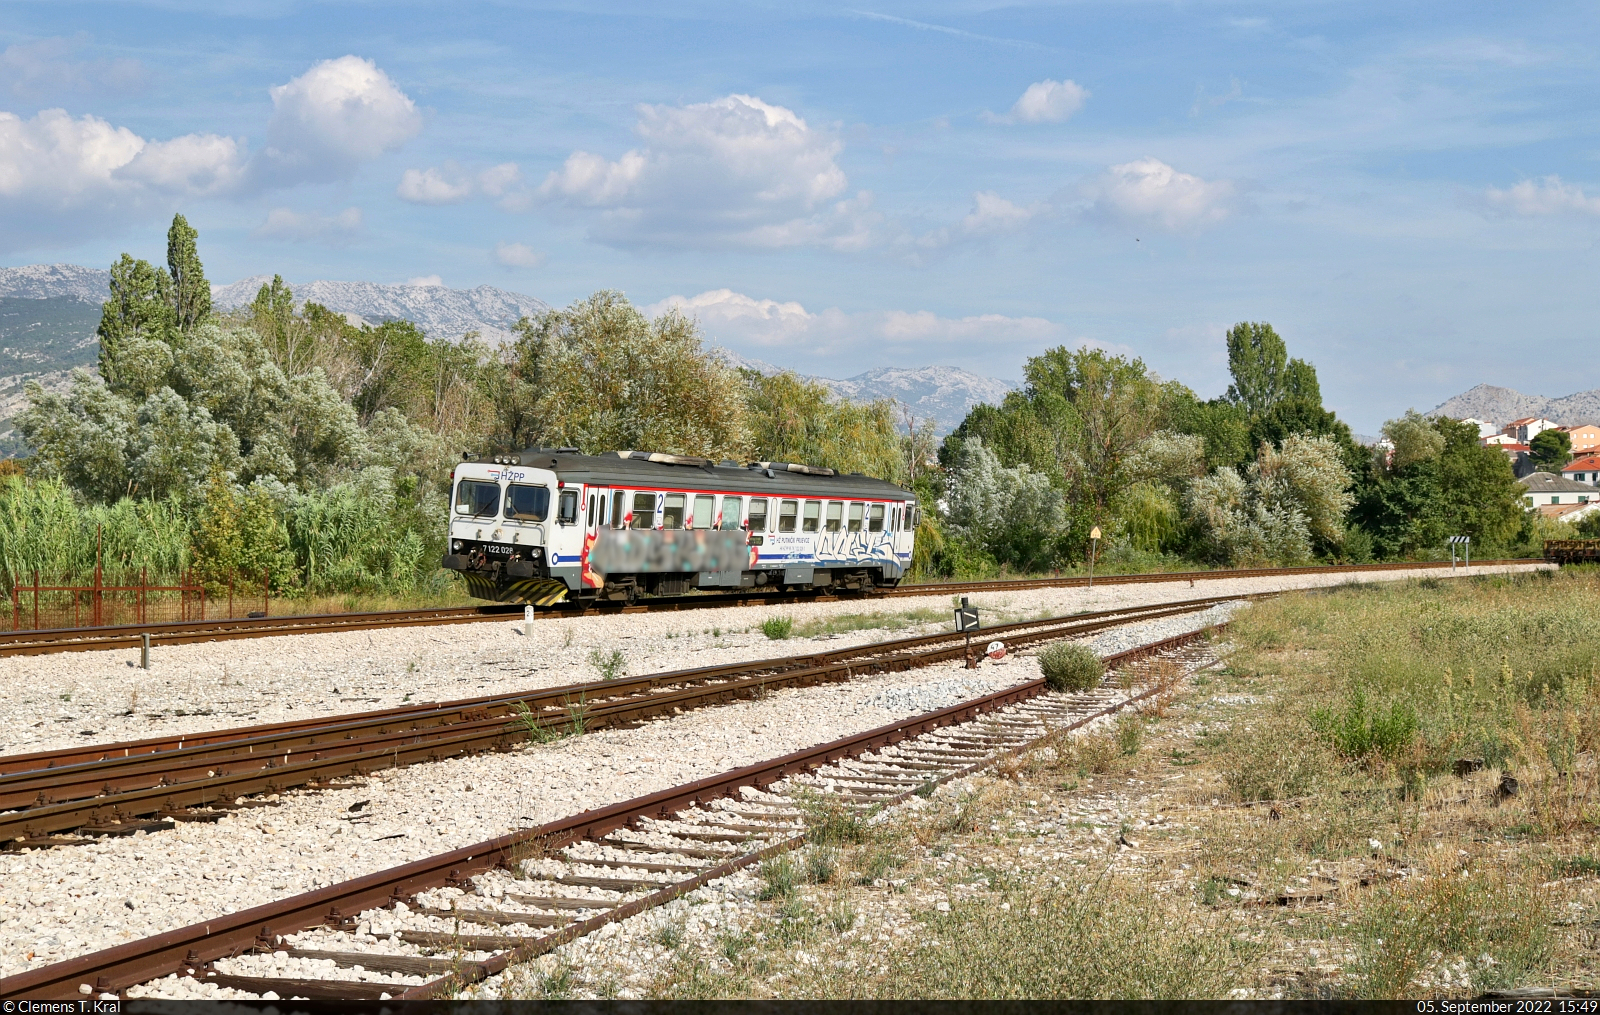 Bei seiner Ausfahrt aus dem Bahnhof Solin (HR) wurde auf 7122 028 (95 78 7122 028-2 HR-HŽPP) nachgeschossen.

🧰 HŽ Putnički prijevoz (HŽPP)
🚝 P 5527 Kaštel Stari (HR)–Split (HR)
🕓 5.9.2022 | 15:49 Uhr